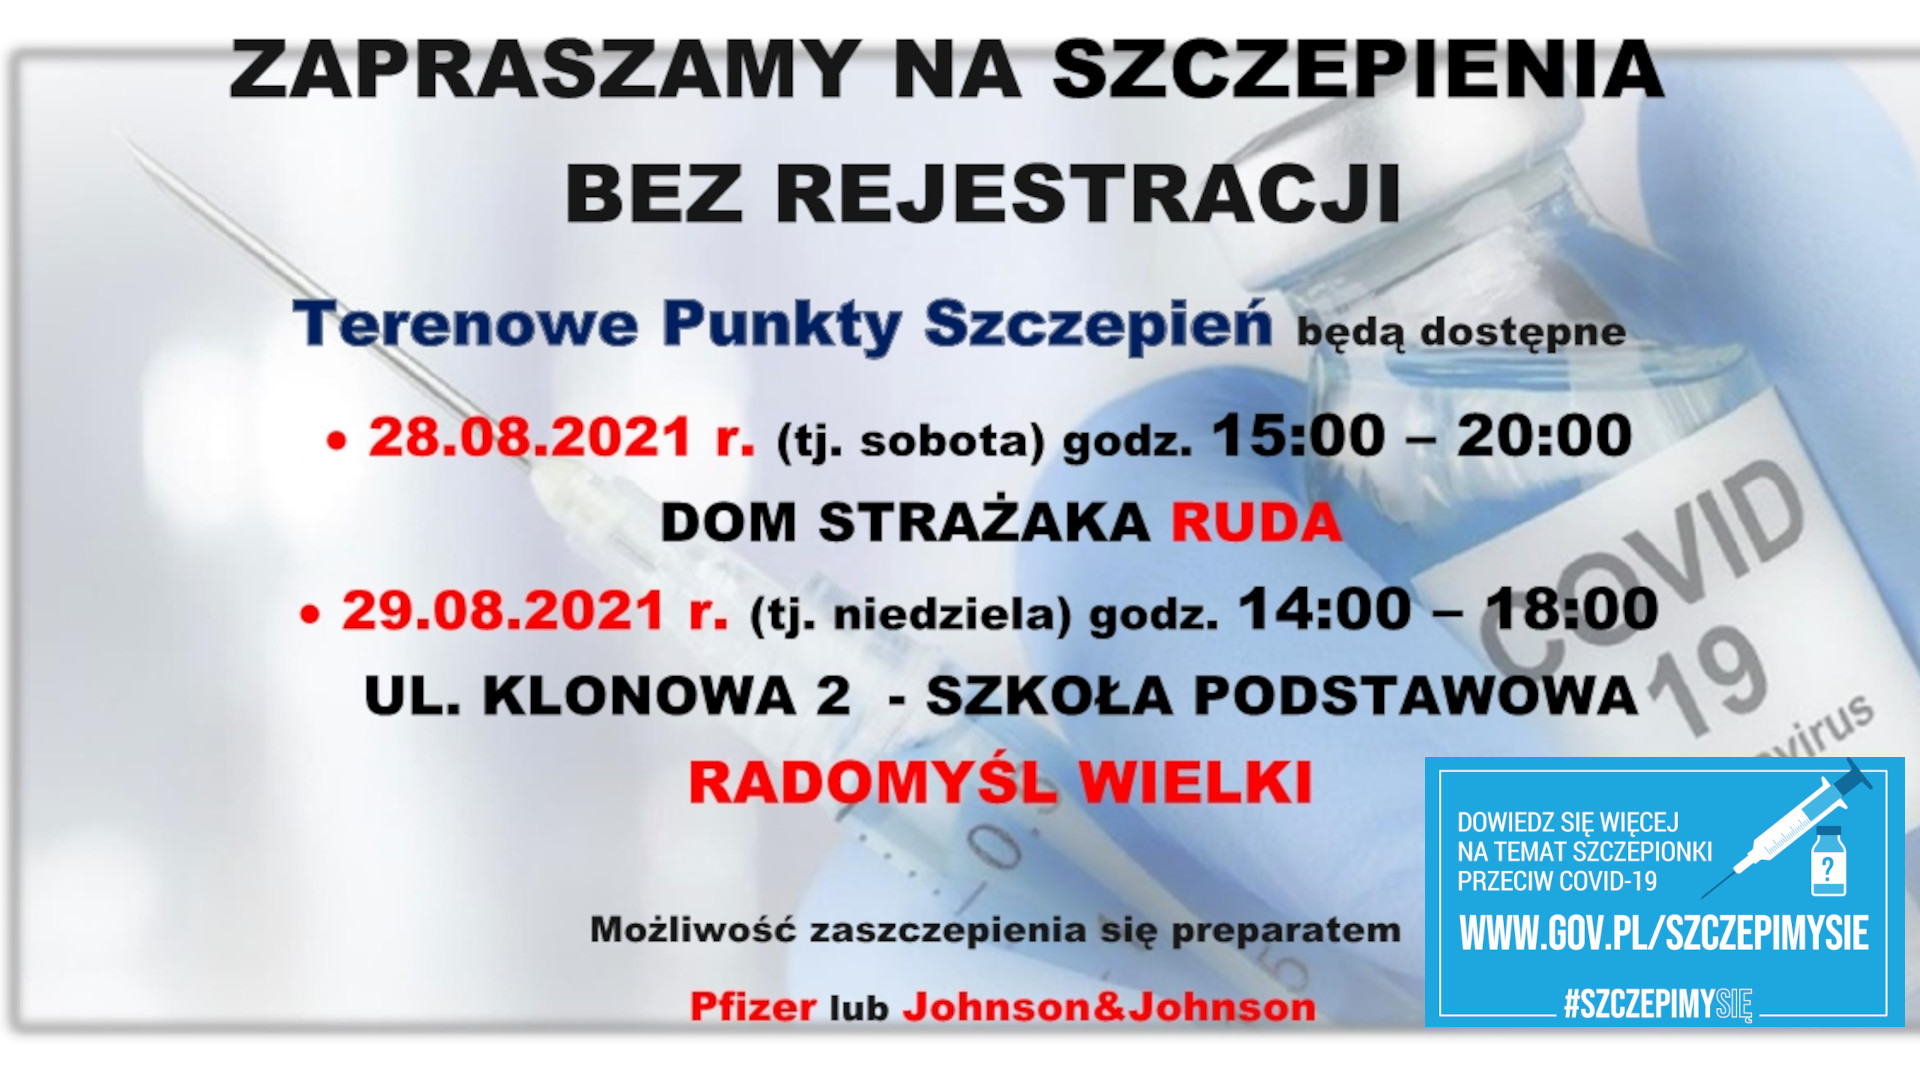 Zaproszenie na szczepienia bez rejestracji 28 i 29 sierpnia 2021 - plakat